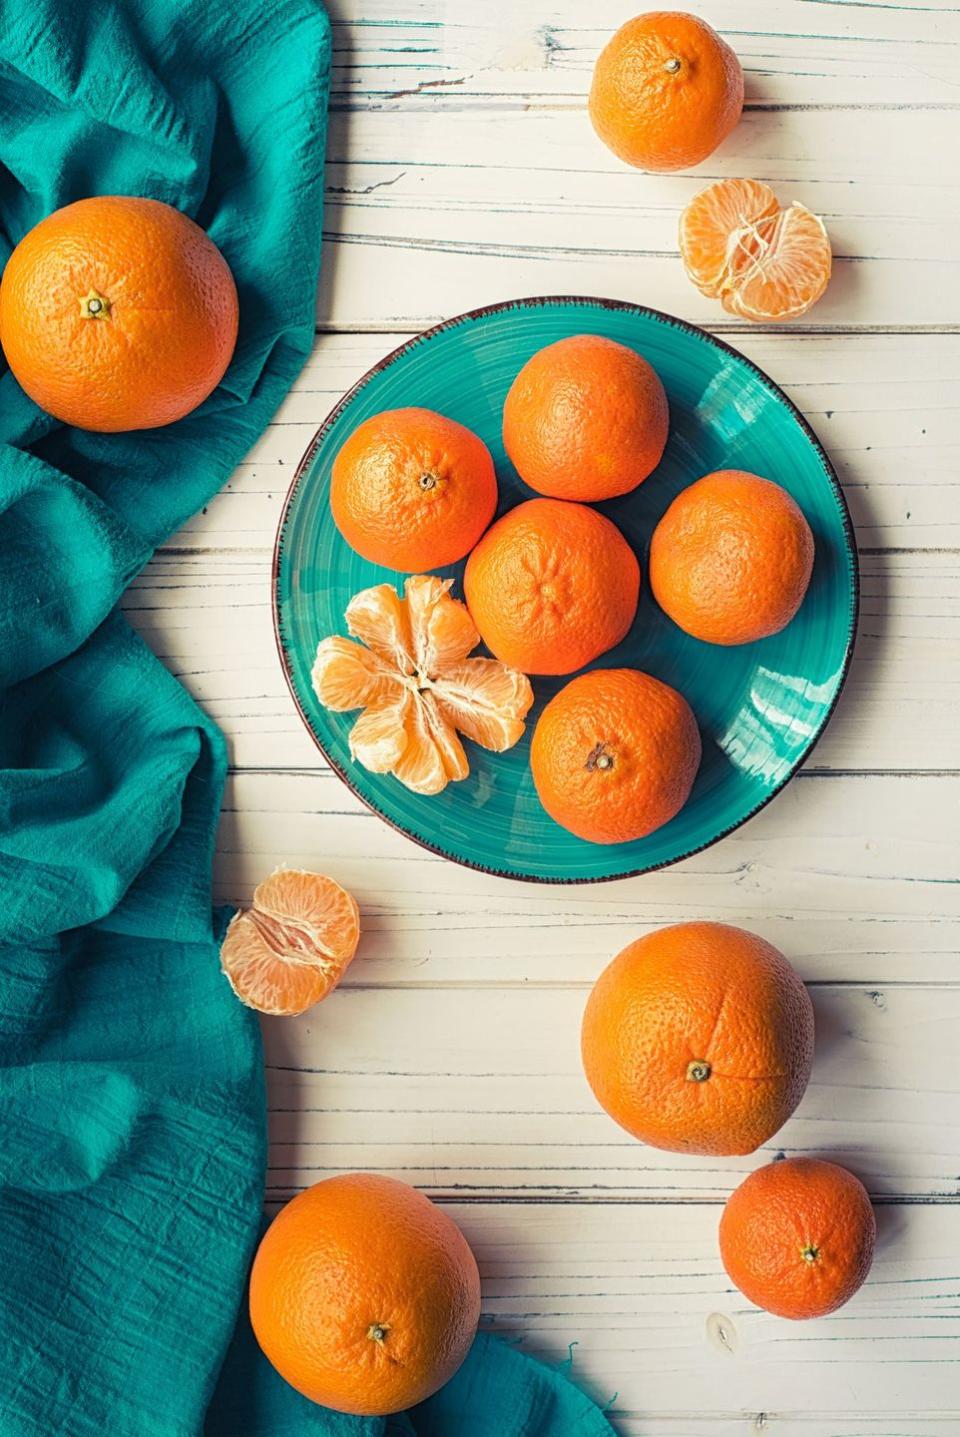 9) Tangerines